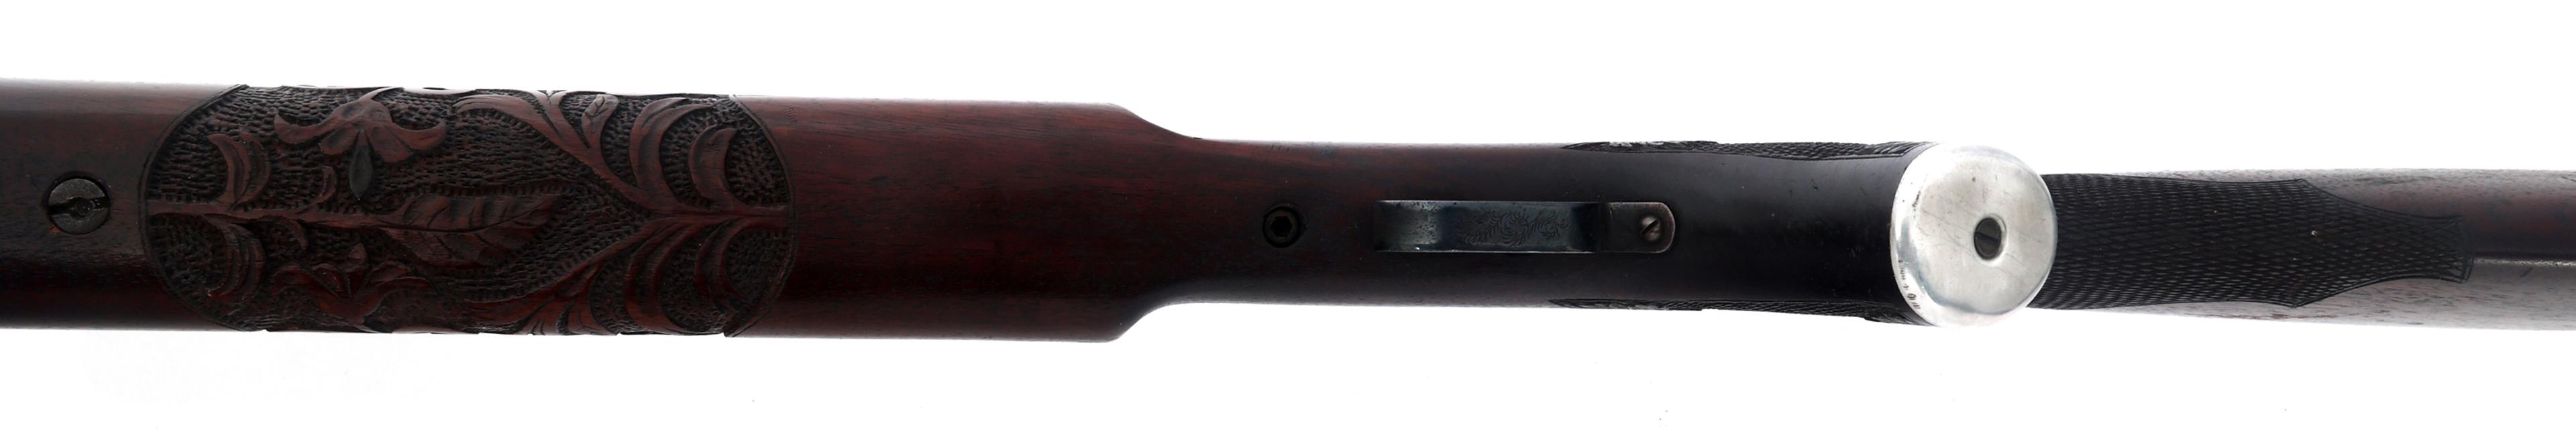 HOOSIER GUN SHOP MODEL 500 38 CALIBER TARGET RIFLE